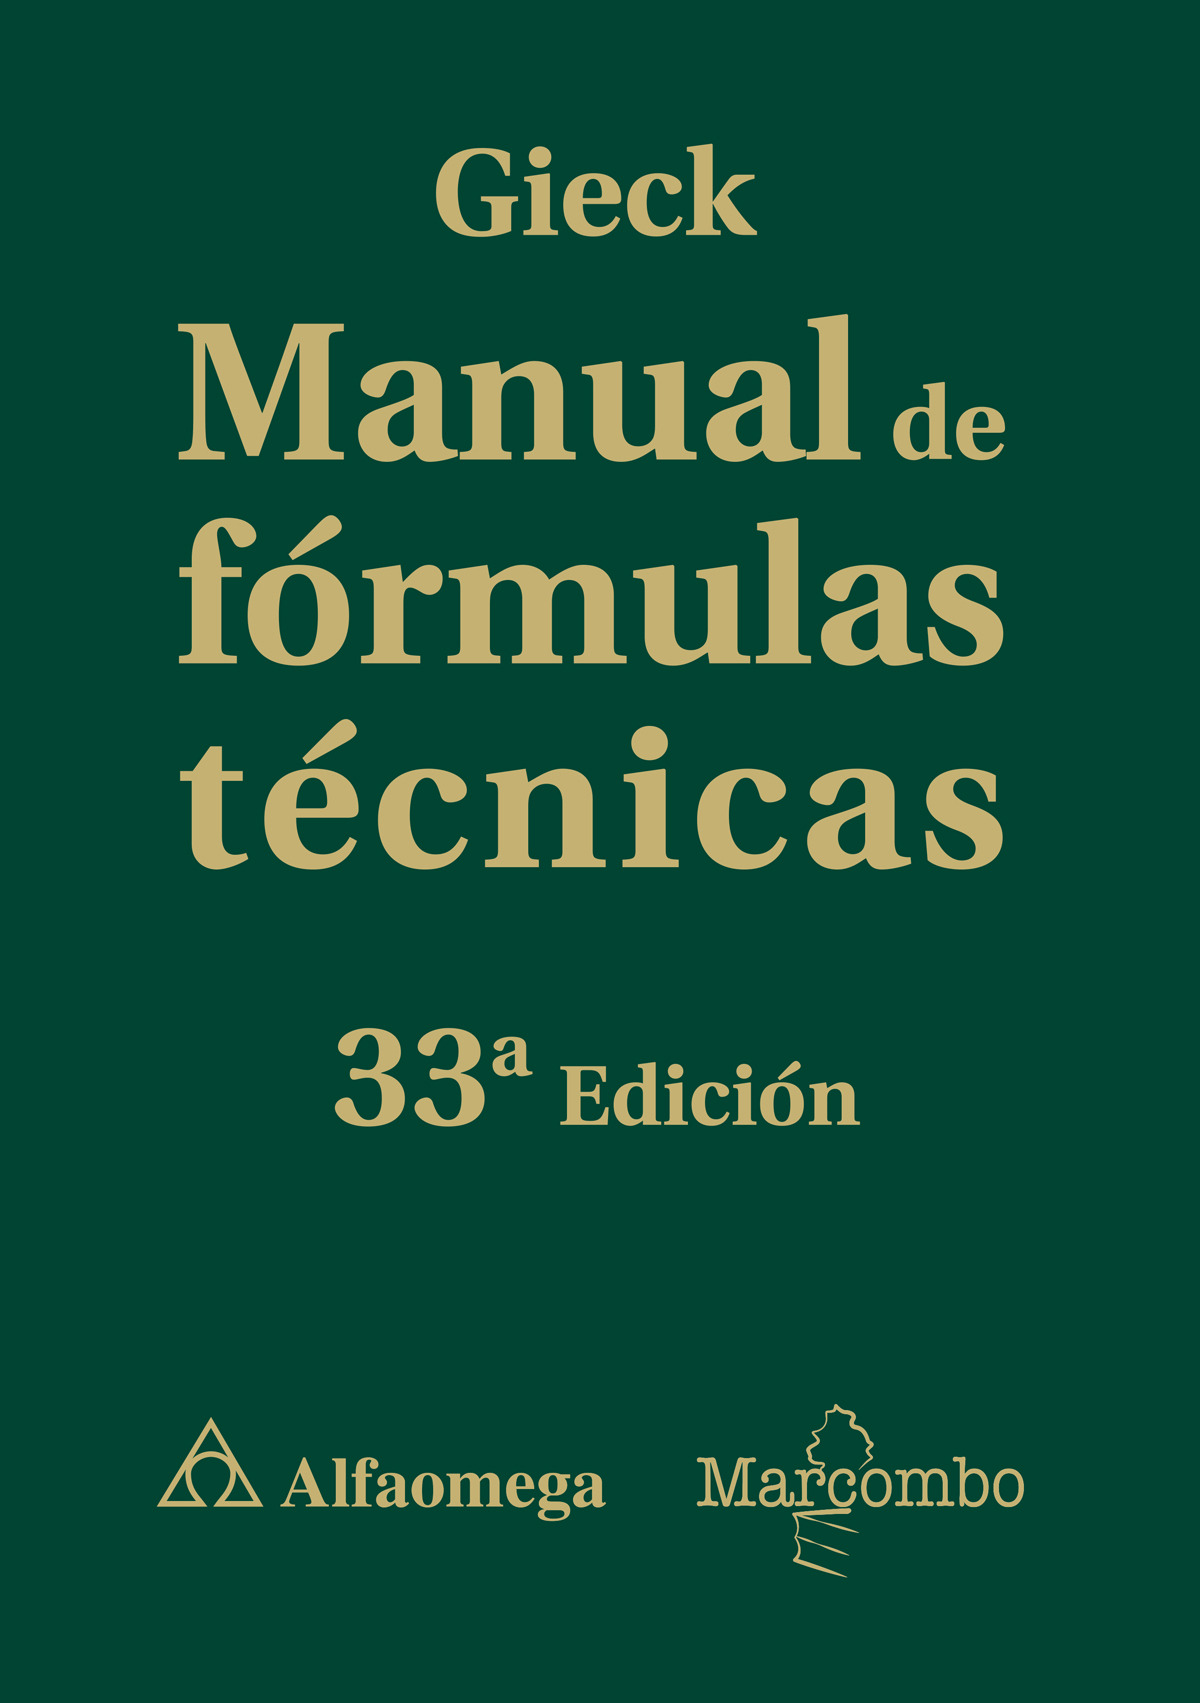 Manual de formulas tecnicas 33'ed - Gieck